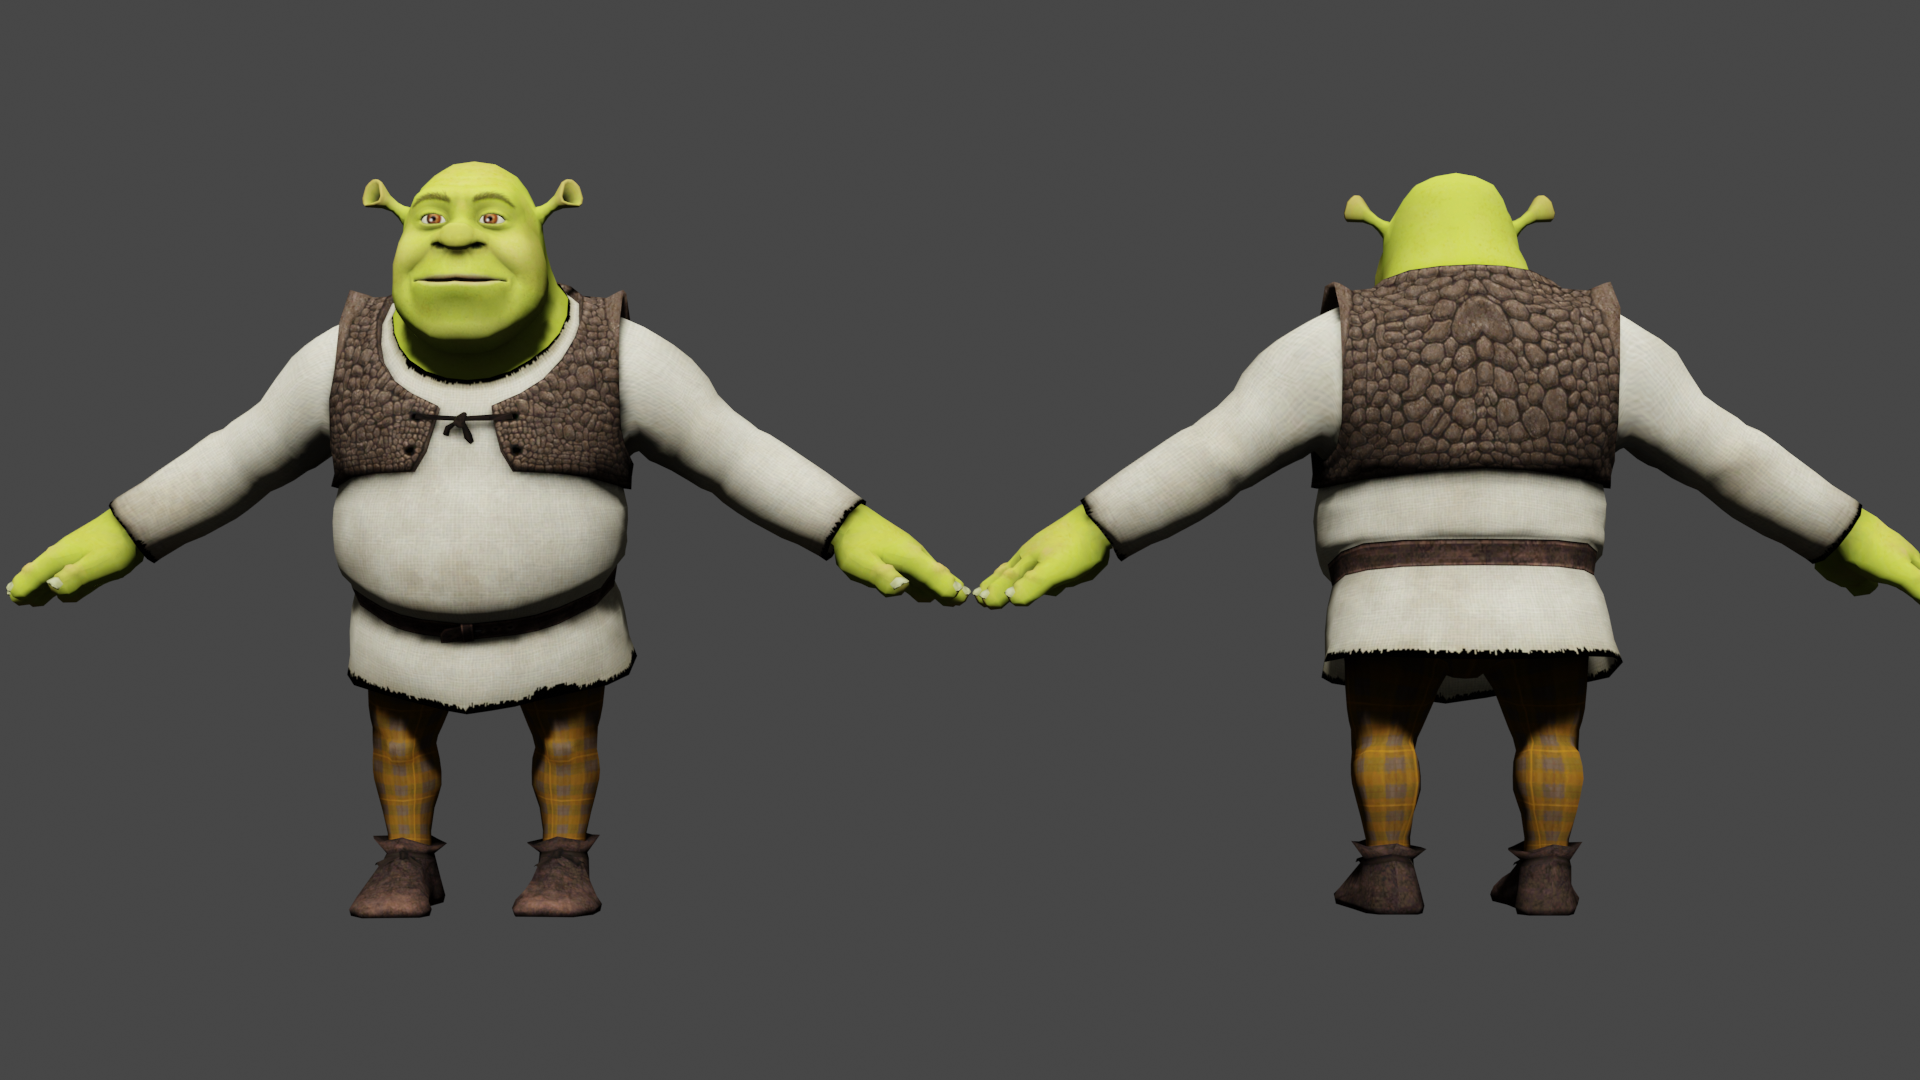 Shrek by animebou33 on DeviantArt